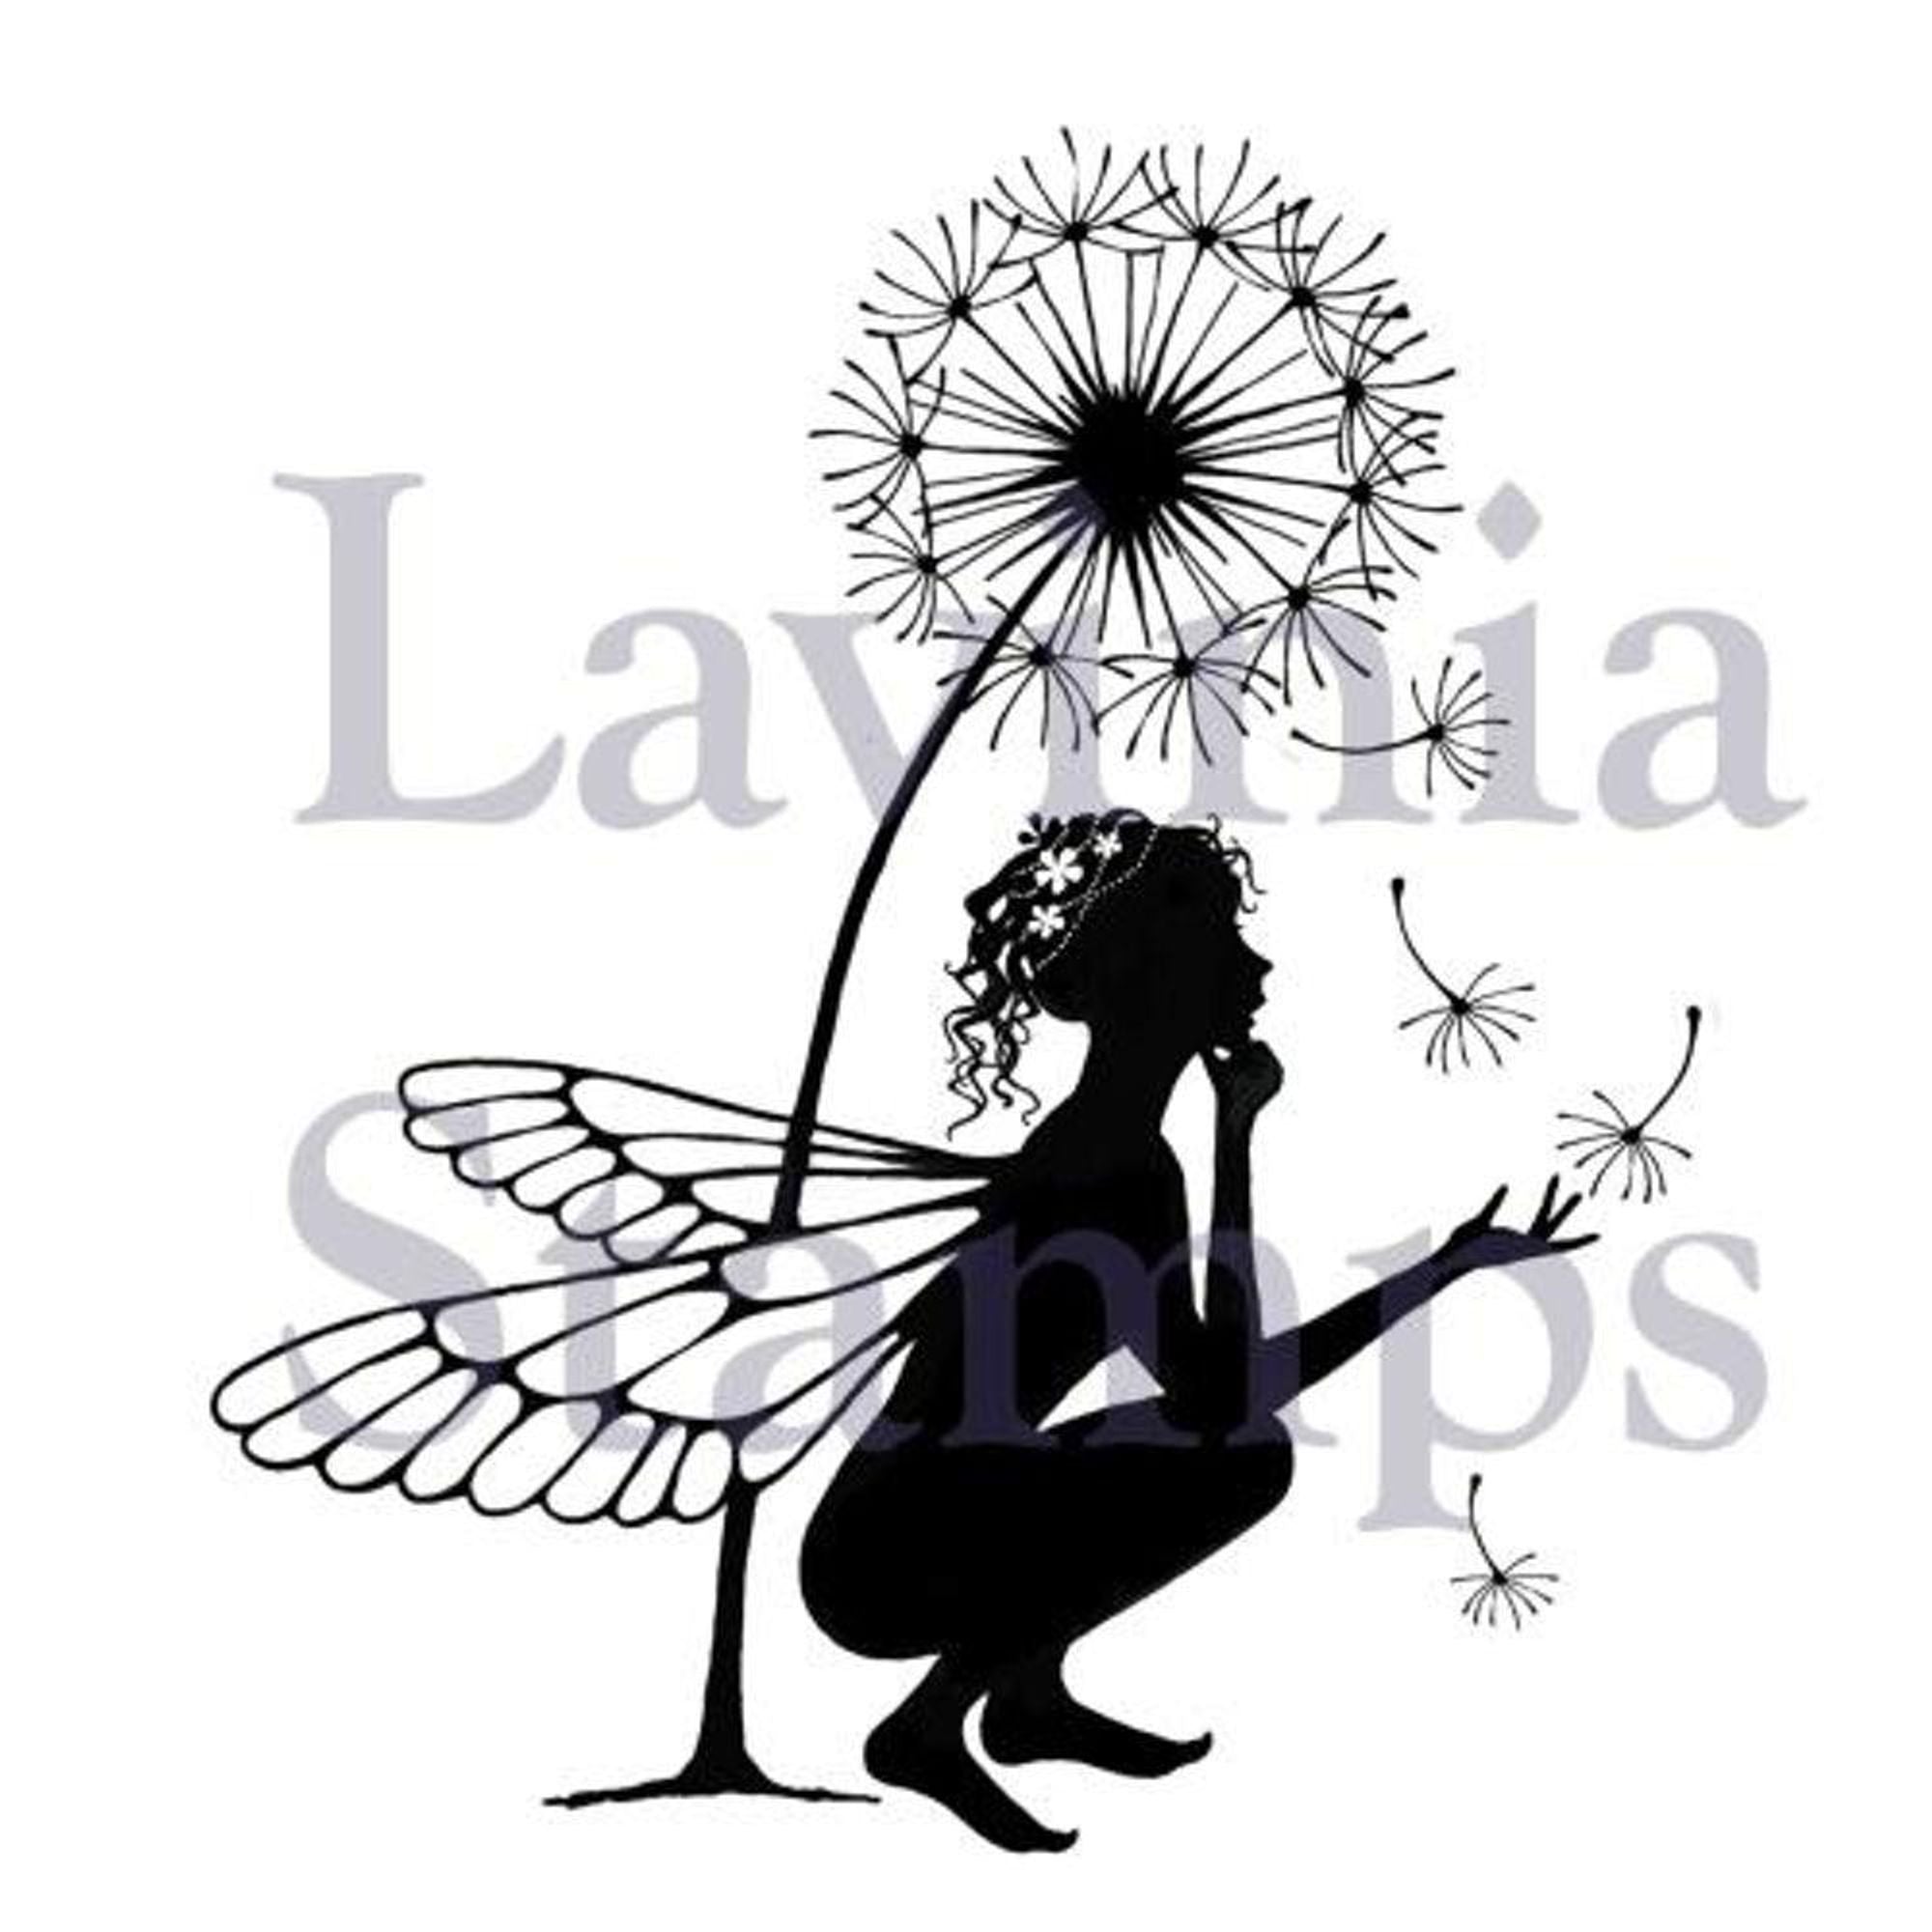 Lavinia Stamp - Fairytale